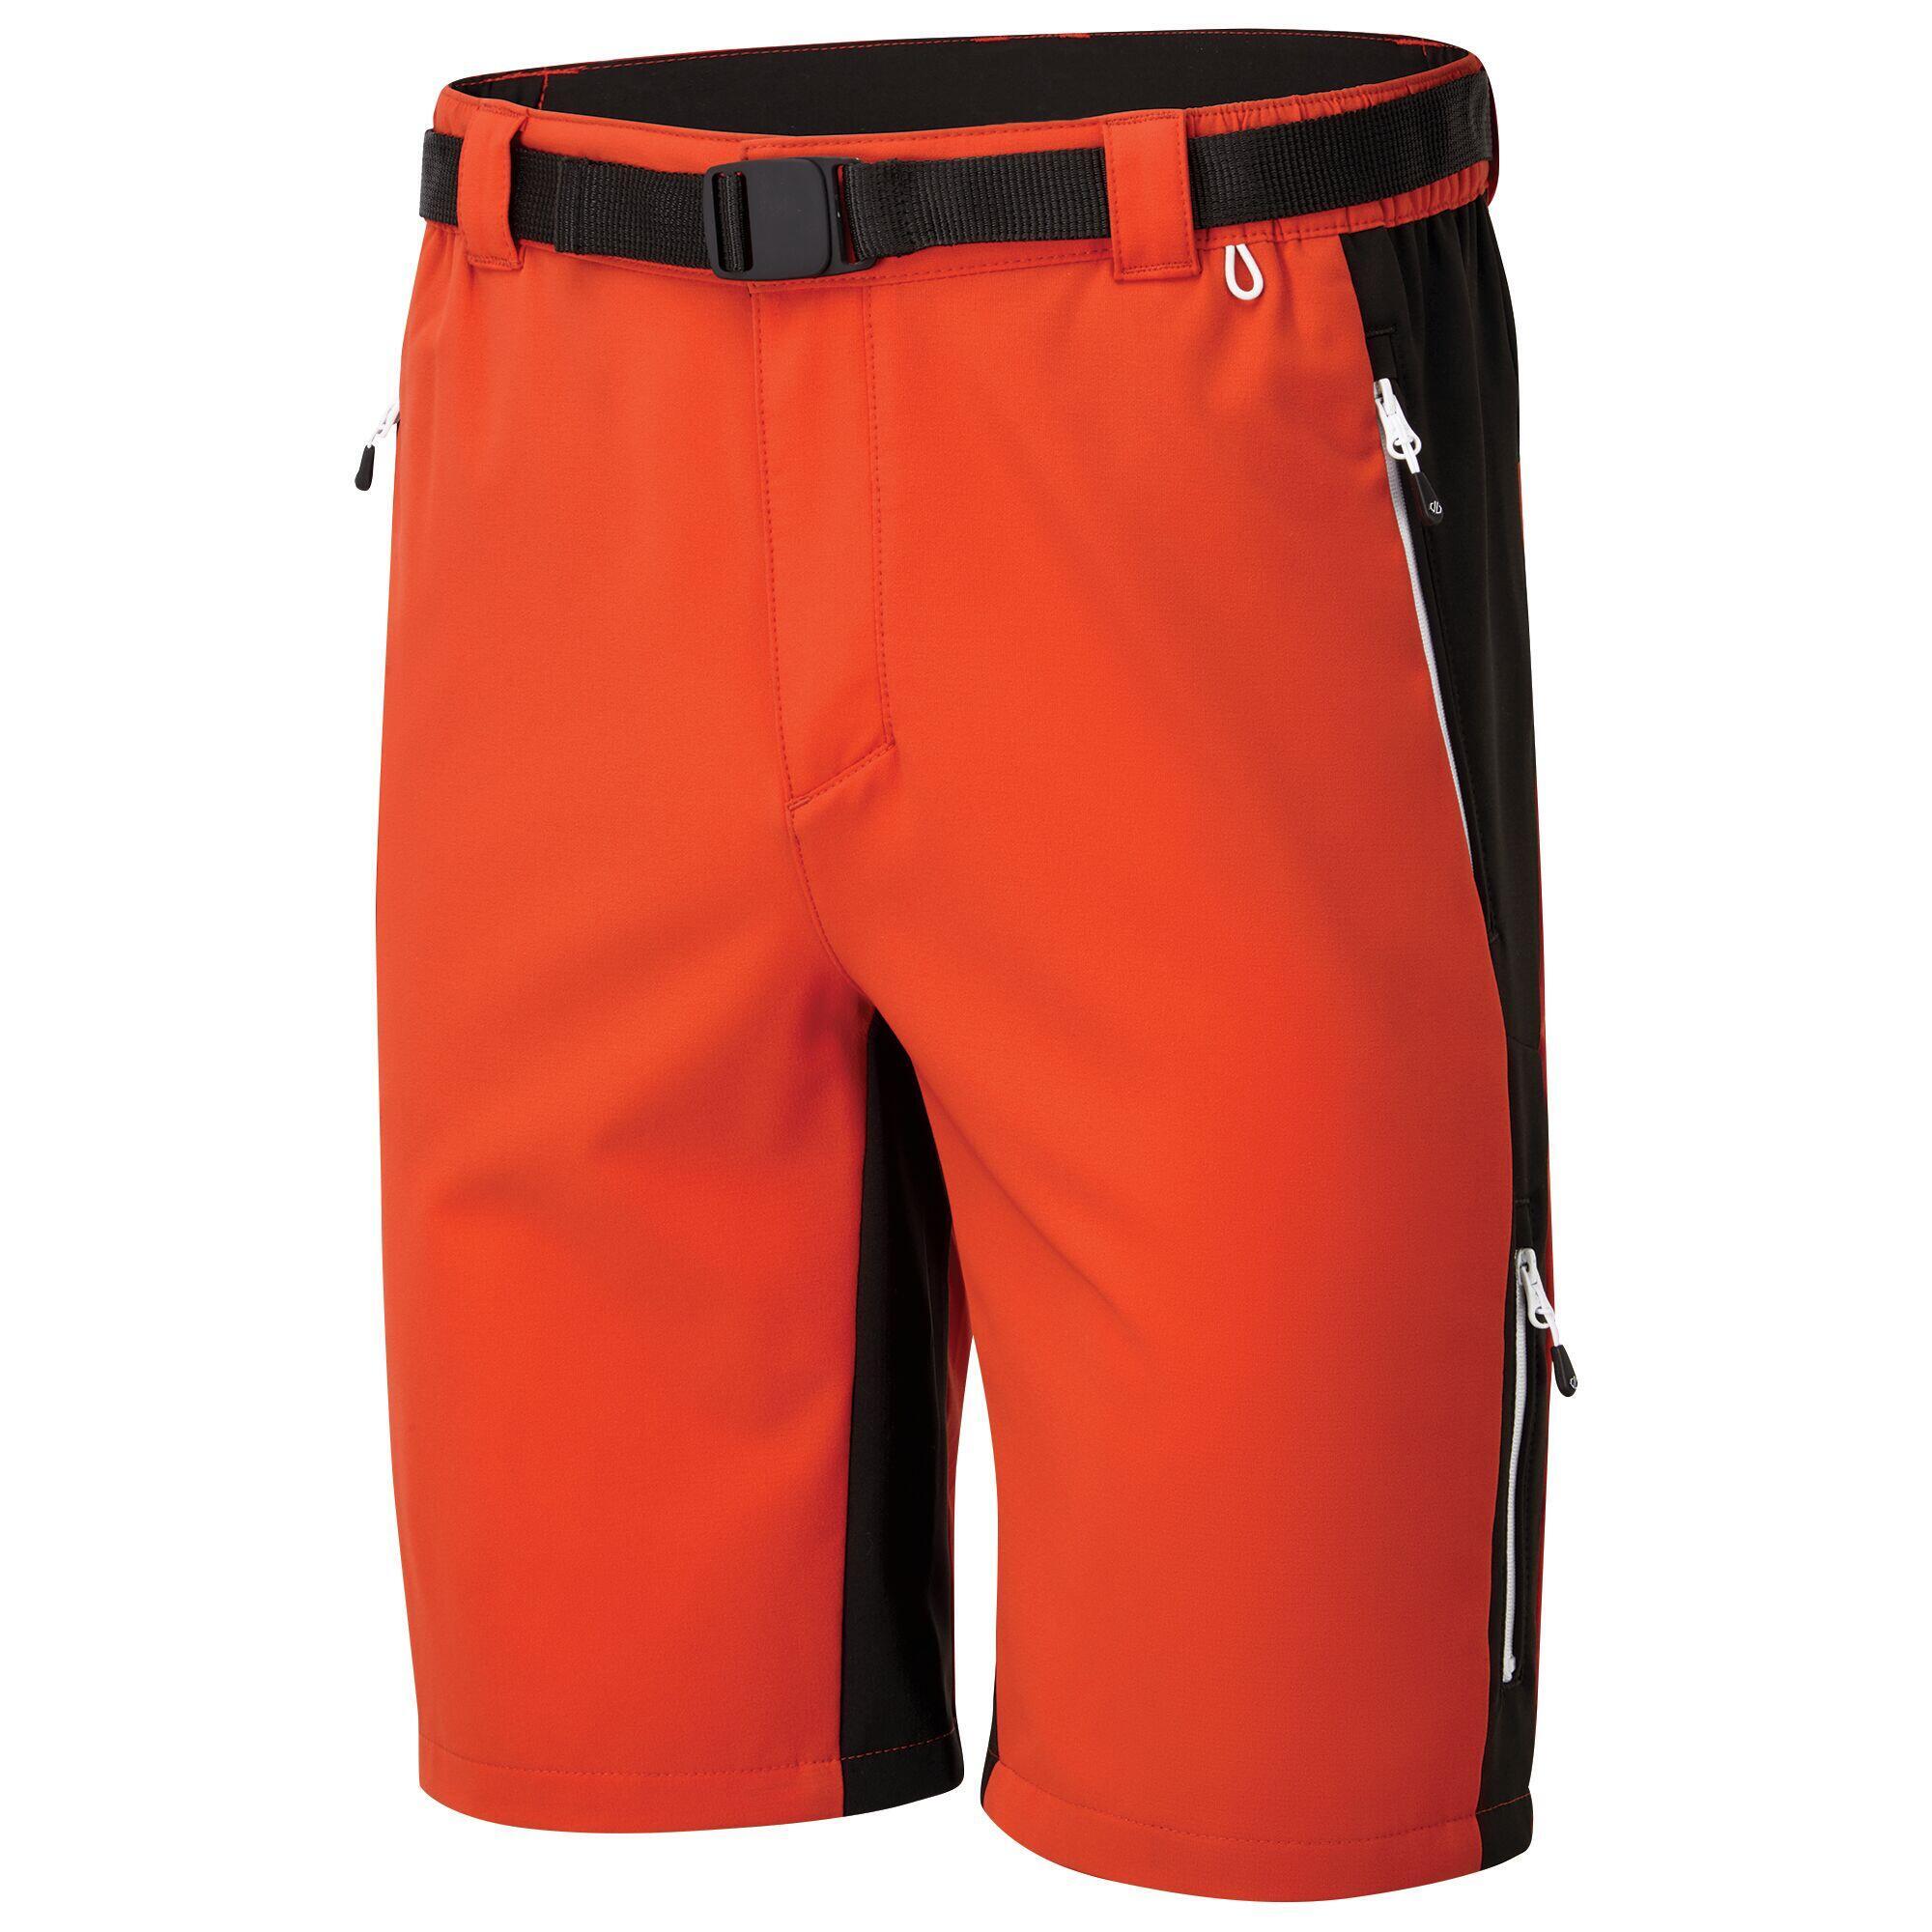 Мужские походные шорты Disport II - оранжевый/черный DARE 2B, апельсин